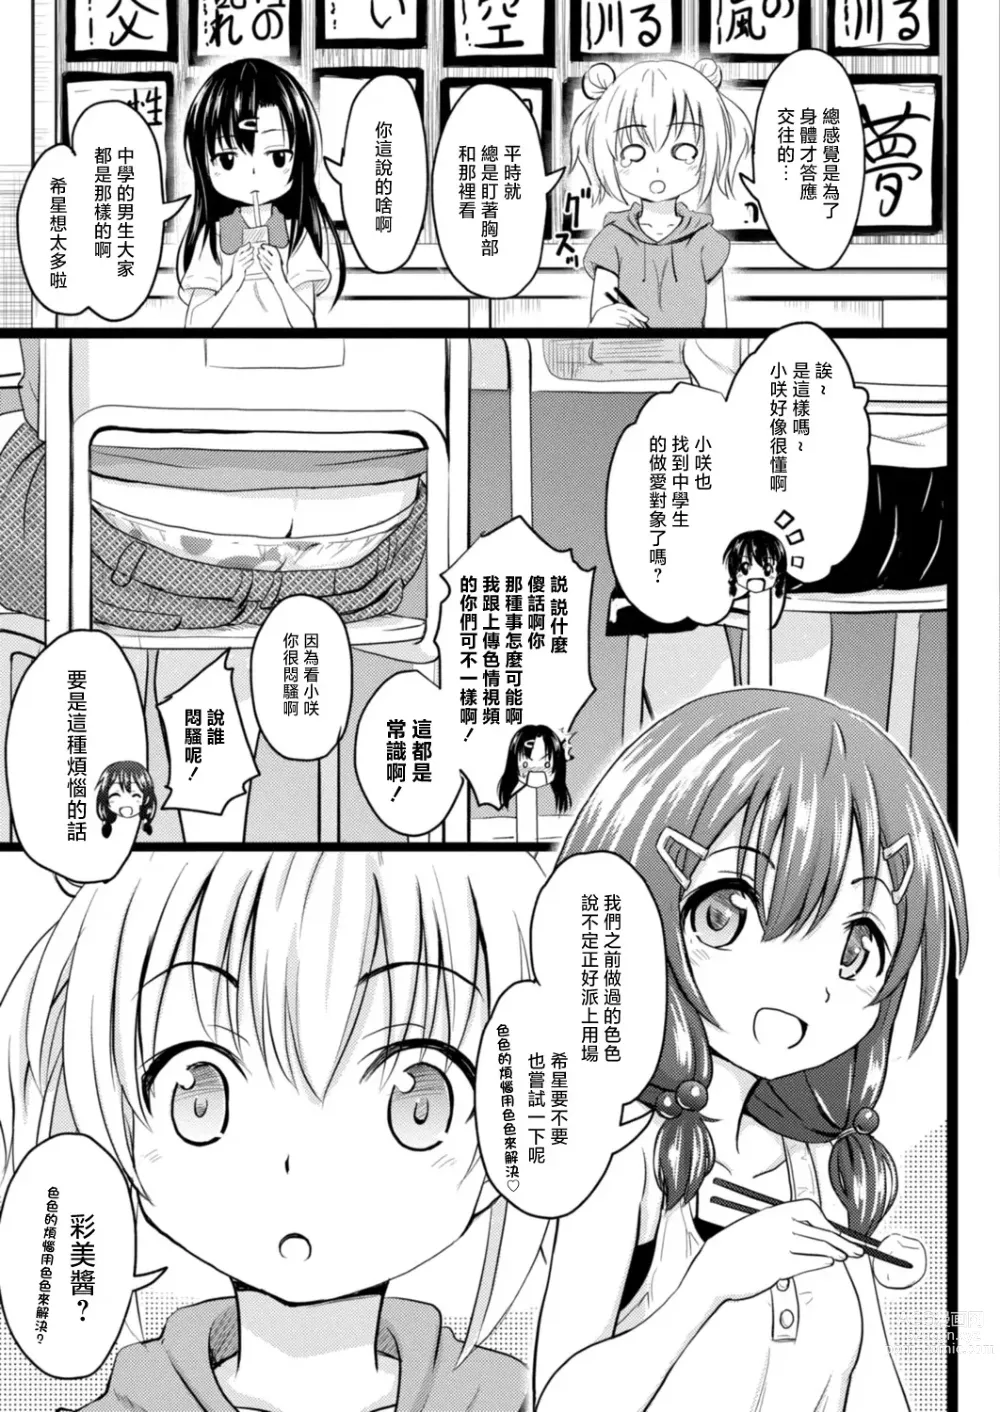 Page 7 of doujinshi Imadoki Joshi Shoukagusei-san no Seikoto 2 Nozomi-chan no Yukkuri Ecchi